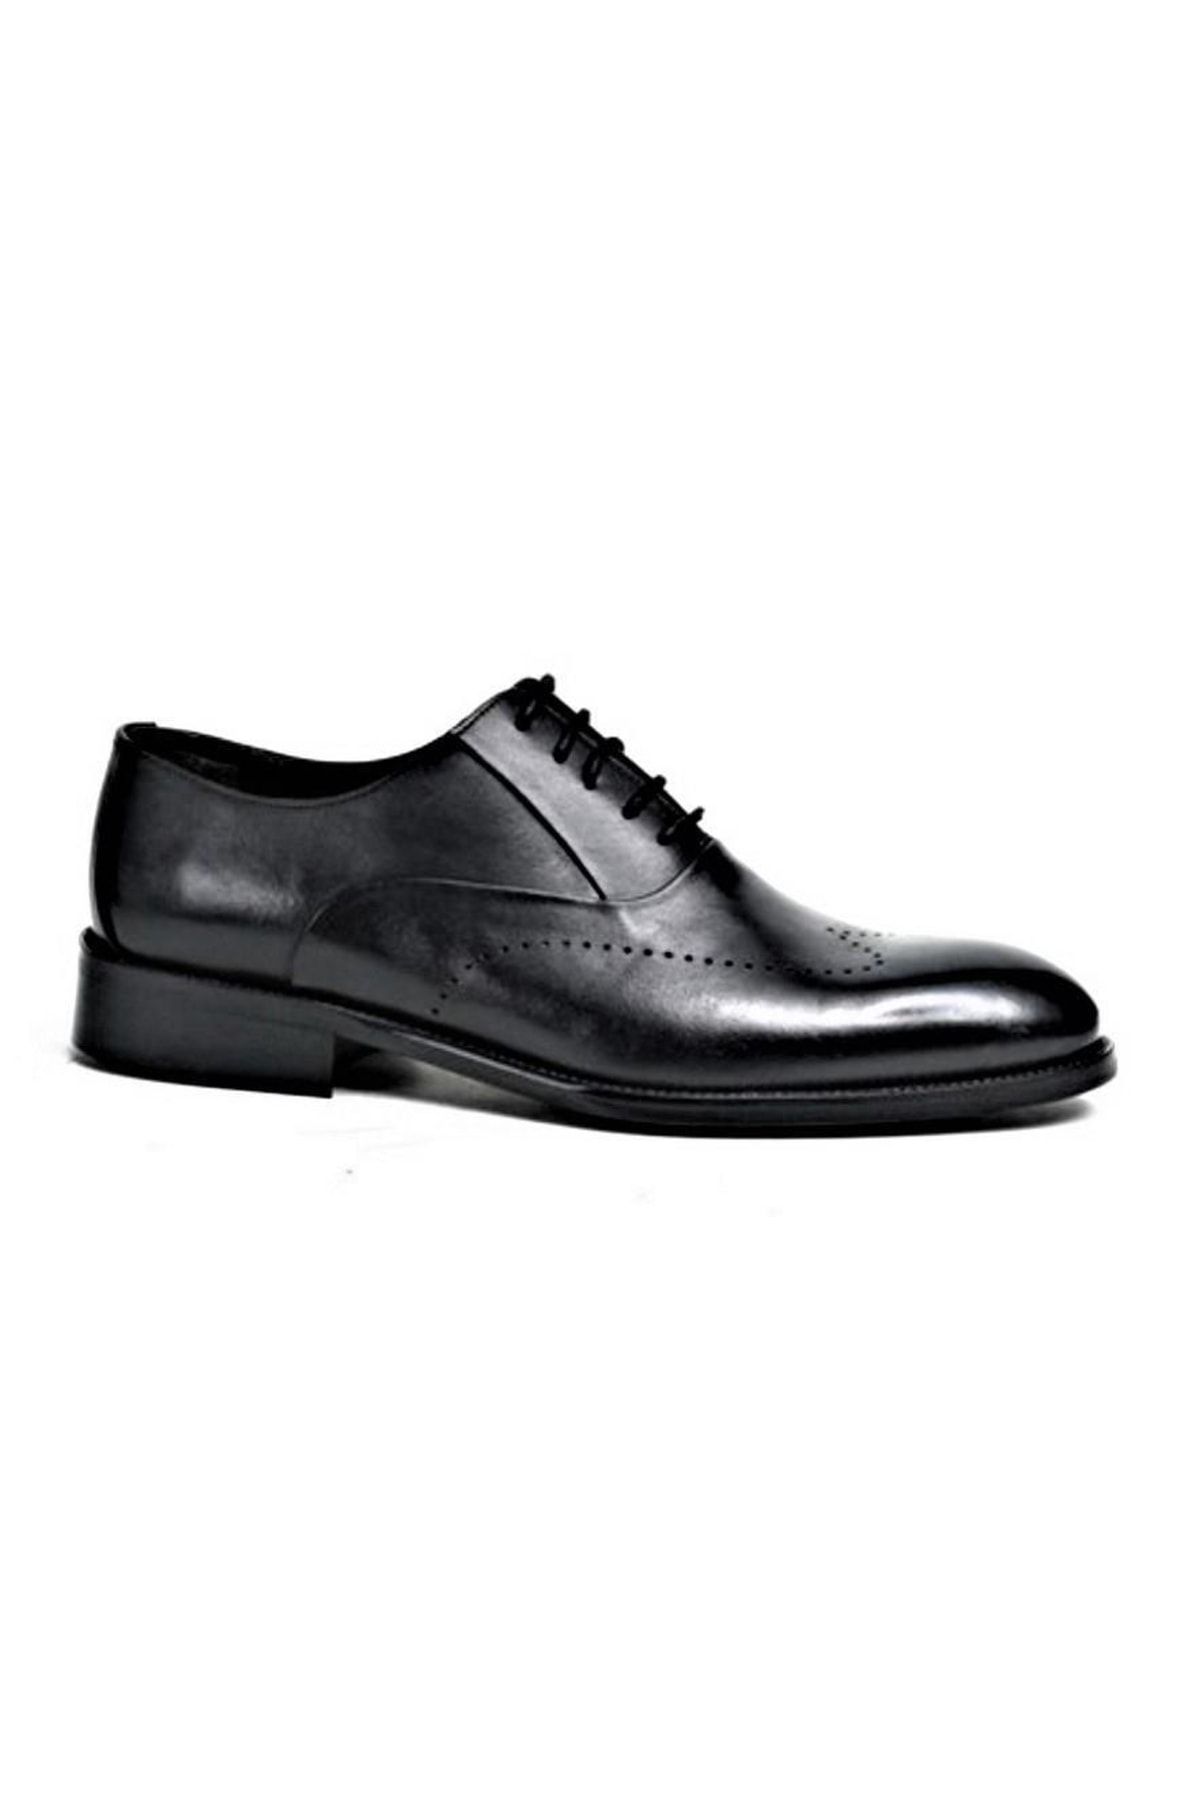 Pierre Cardin 4612228 Erkek Exclusive Hakiki Deri Klasik Ayakkabı